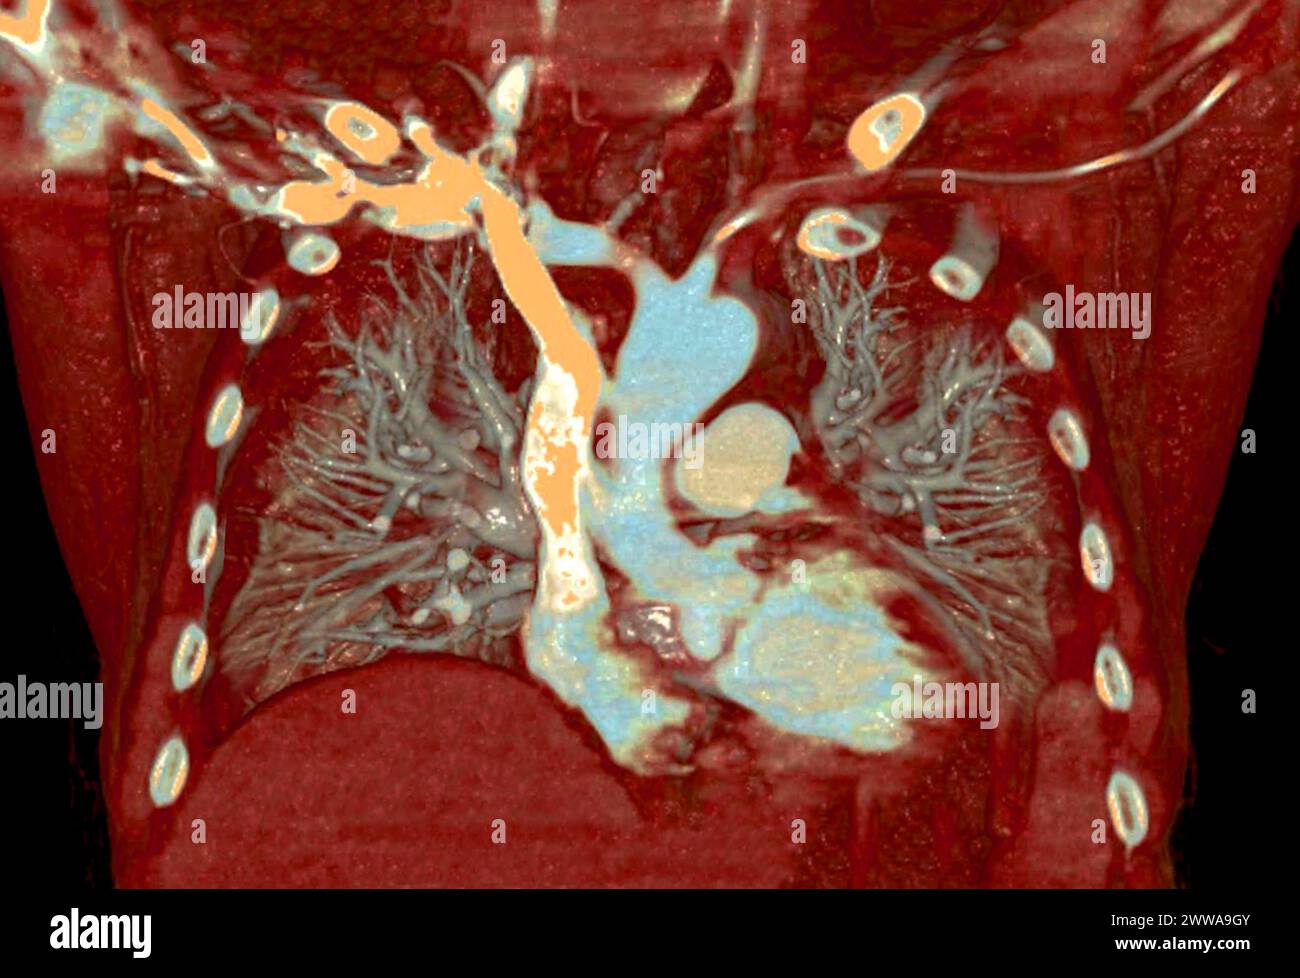 CTA 3D-Rendering der thorakalen Aorta bietet eine detaillierte Visualisierung und liefert klare Einblicke in die Anatomie, Pathologie und die umgebenden Strukturen der Aorten für Stockfoto